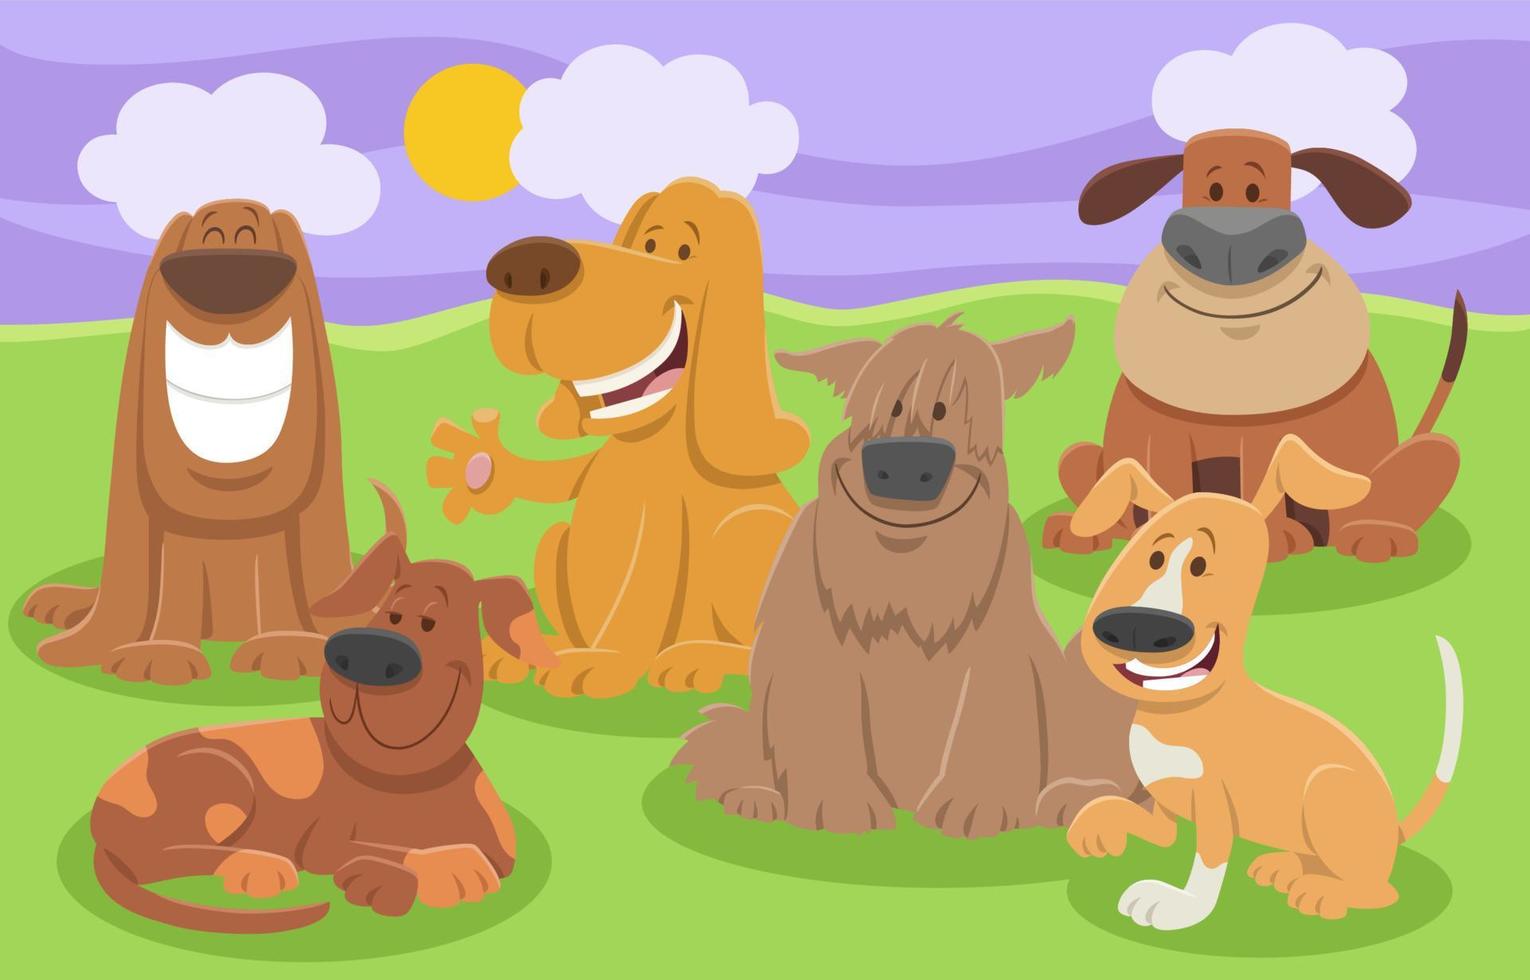 glada tecknade hundar djur karaktärer grupp vektor